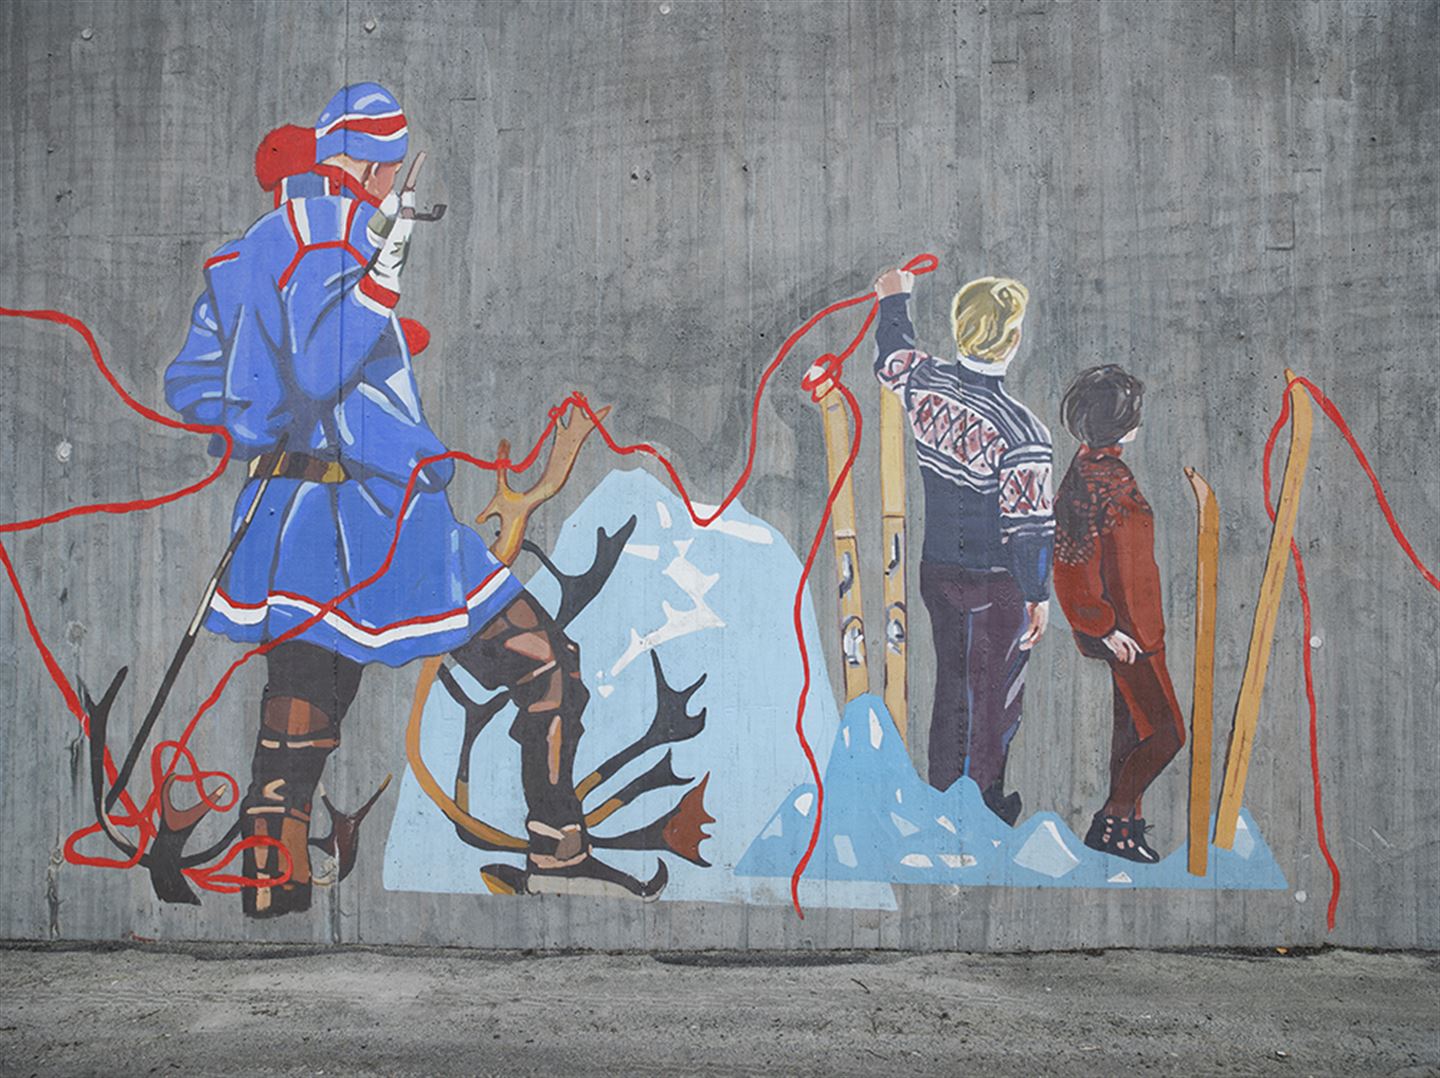 Foto avkunstverket 1: 1 000 483 langs bybanetraseen. Kunstverket er målt på betong og syner eit menneske i samedrakt, gevir, fleire andre menneske og ski.